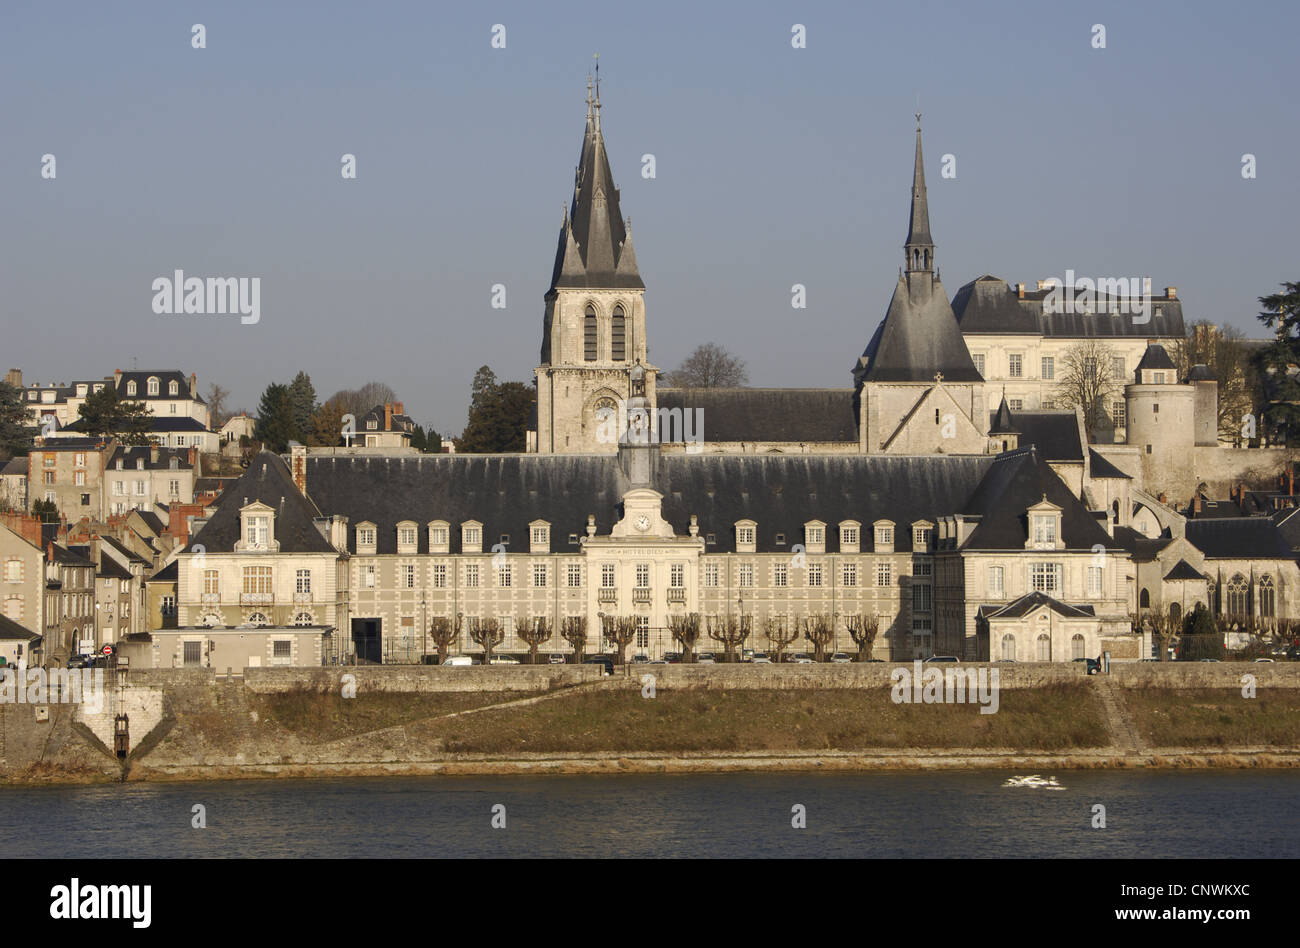 Francia. De Blois. Iglesia de San Nicolás, a orillas del río Loira. Fue construido desde 1138 hasta el siglo XIII. Foto de stock